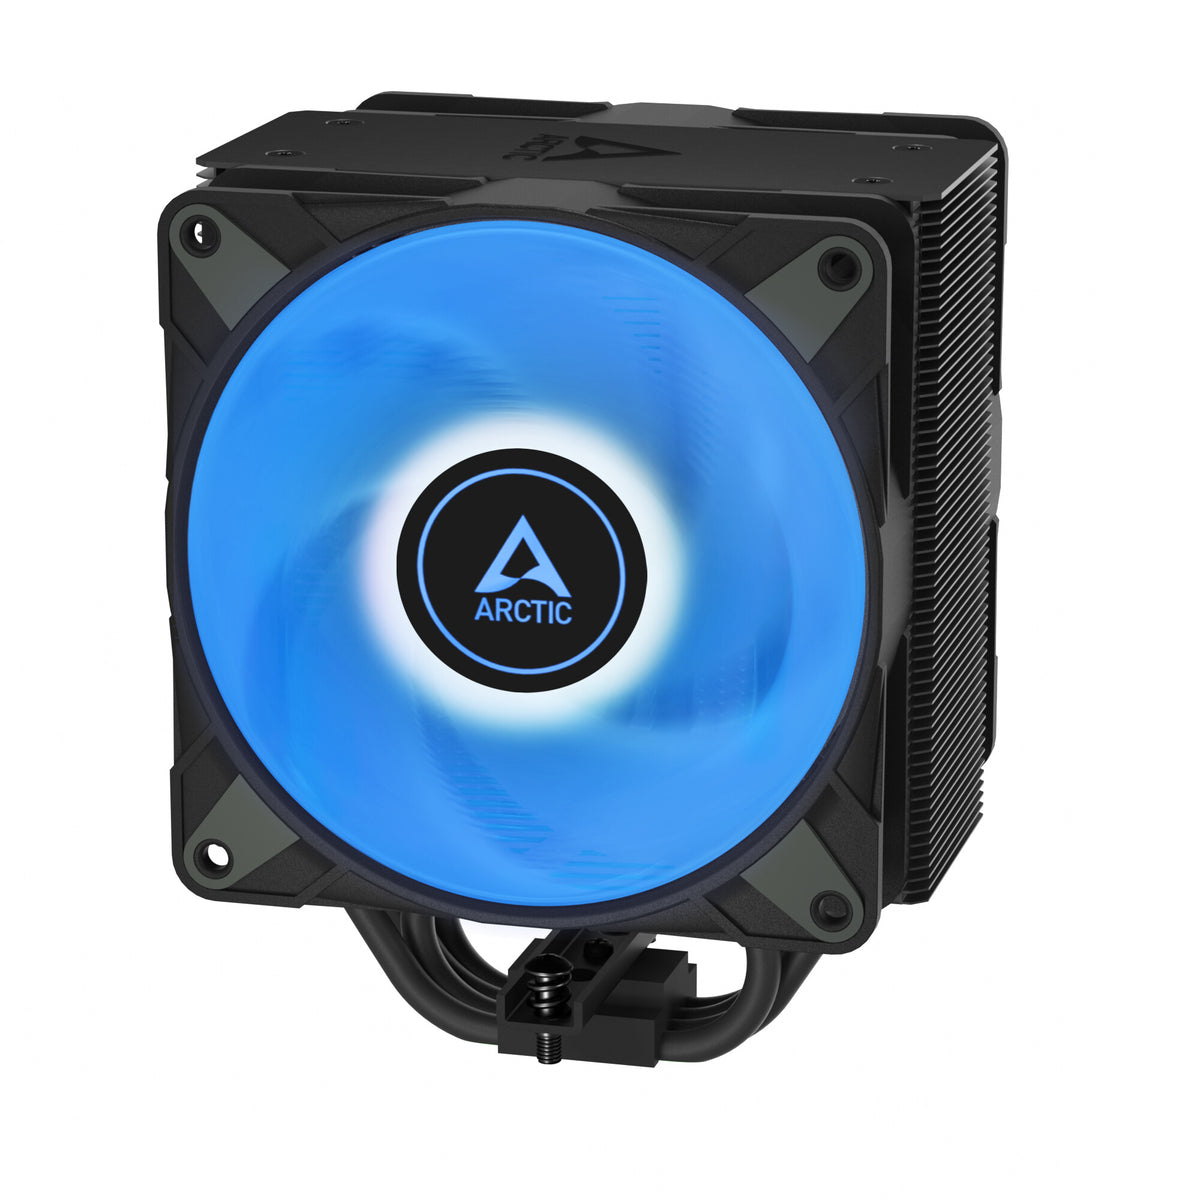 ARCTIC Freezer 36 A-RGB - Air Processor Cooler in Black - 120mm